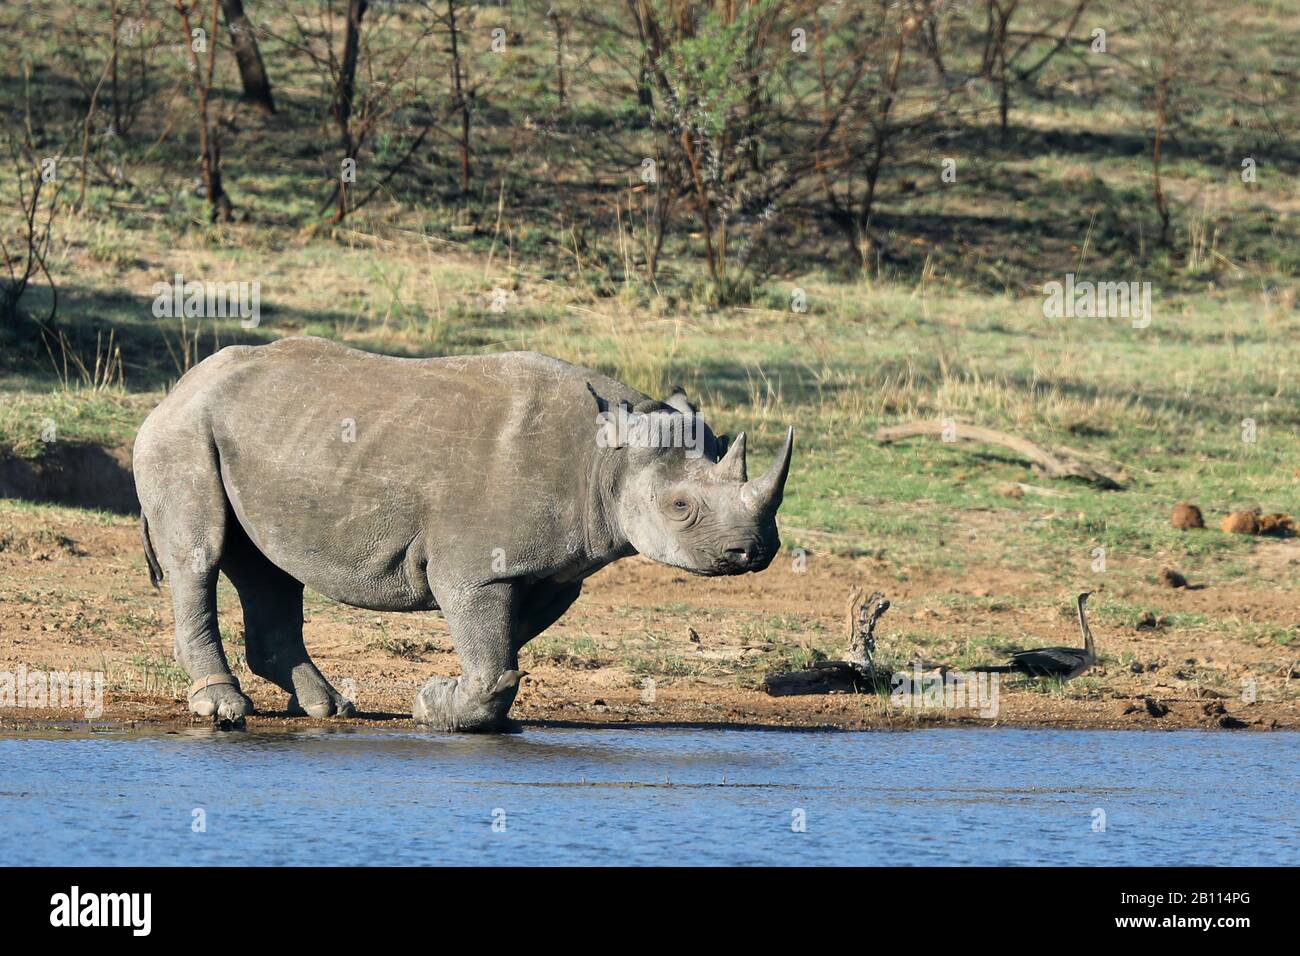 Rhinocéros noirs, rhinocéros accro, rhinocéros de navigation (Diceros bicornis), se dresse au trou d'eau, Afrique du Sud, Province du Nord-Ouest, Parc national de Pilanesberg Banque D'Images